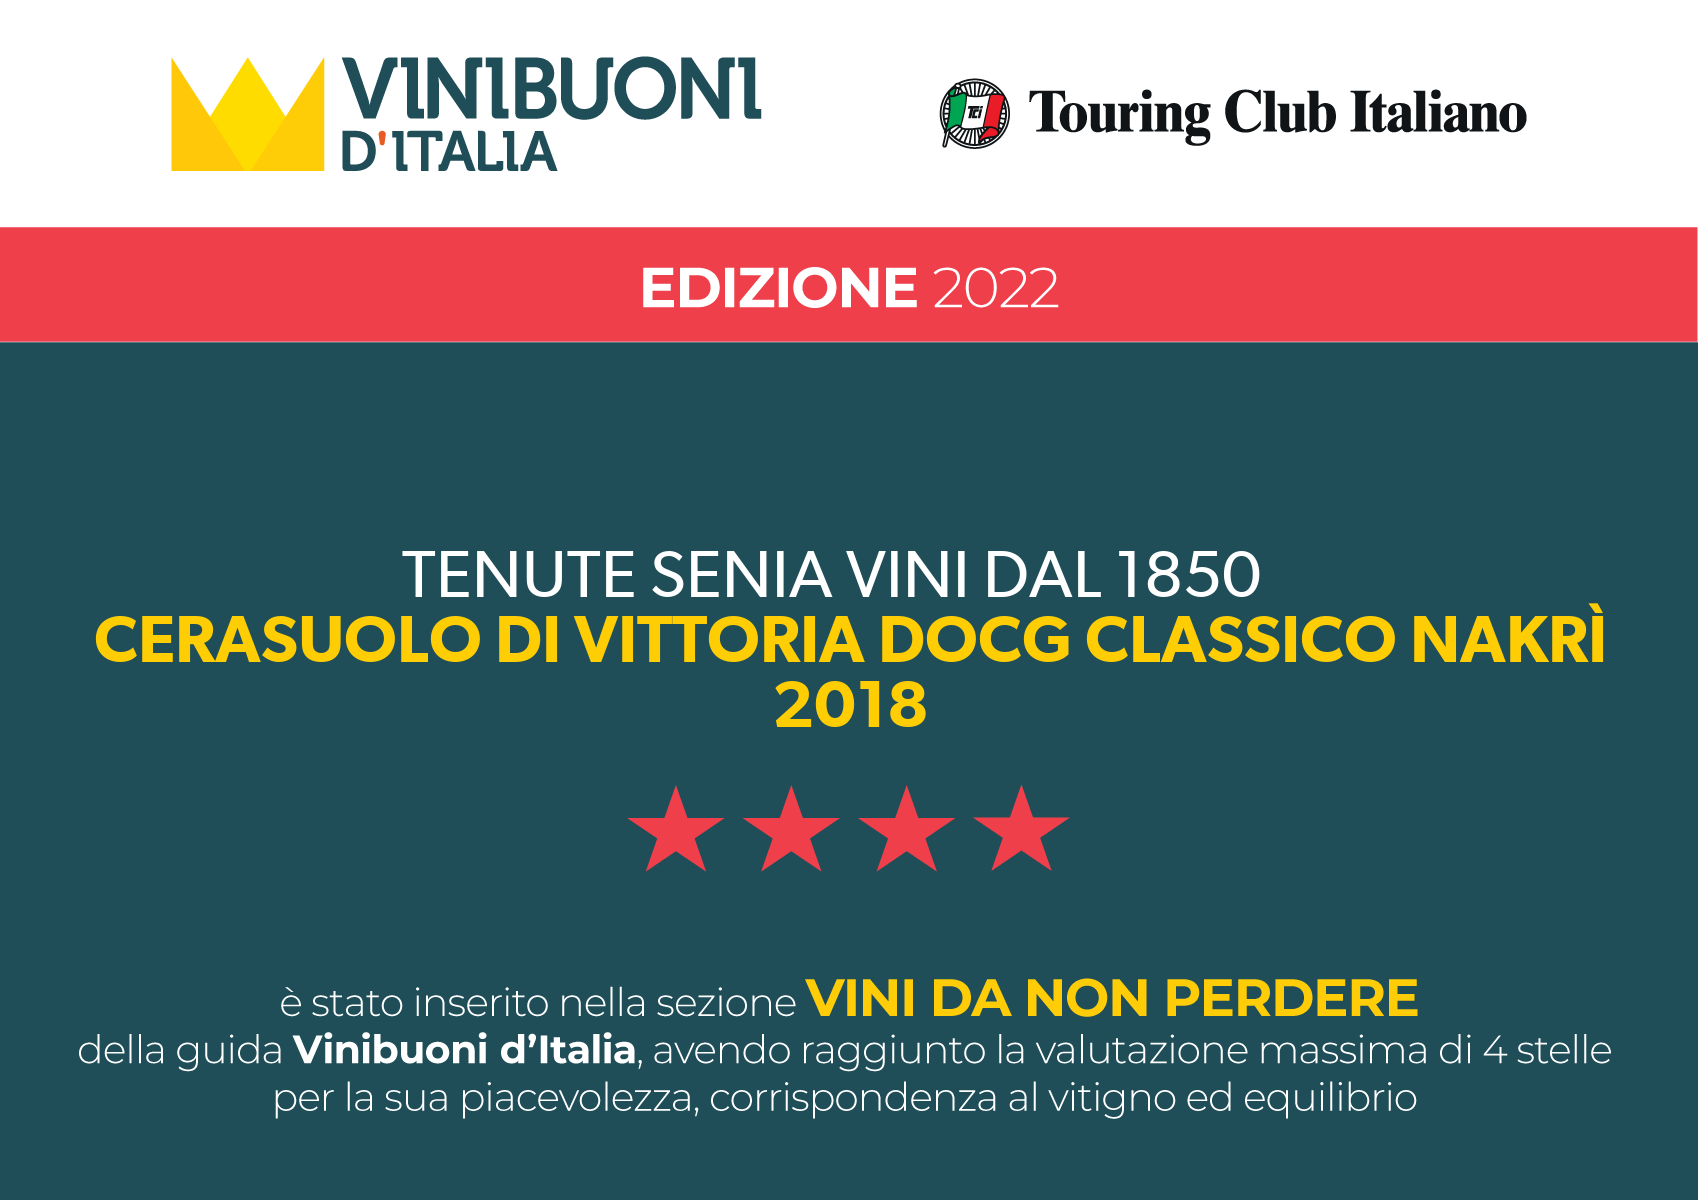 Nei vini da non perdere Nakrì Cerasuolo di Vittoria Docg Classico 2018 Vinibuoni d'Italia 2022